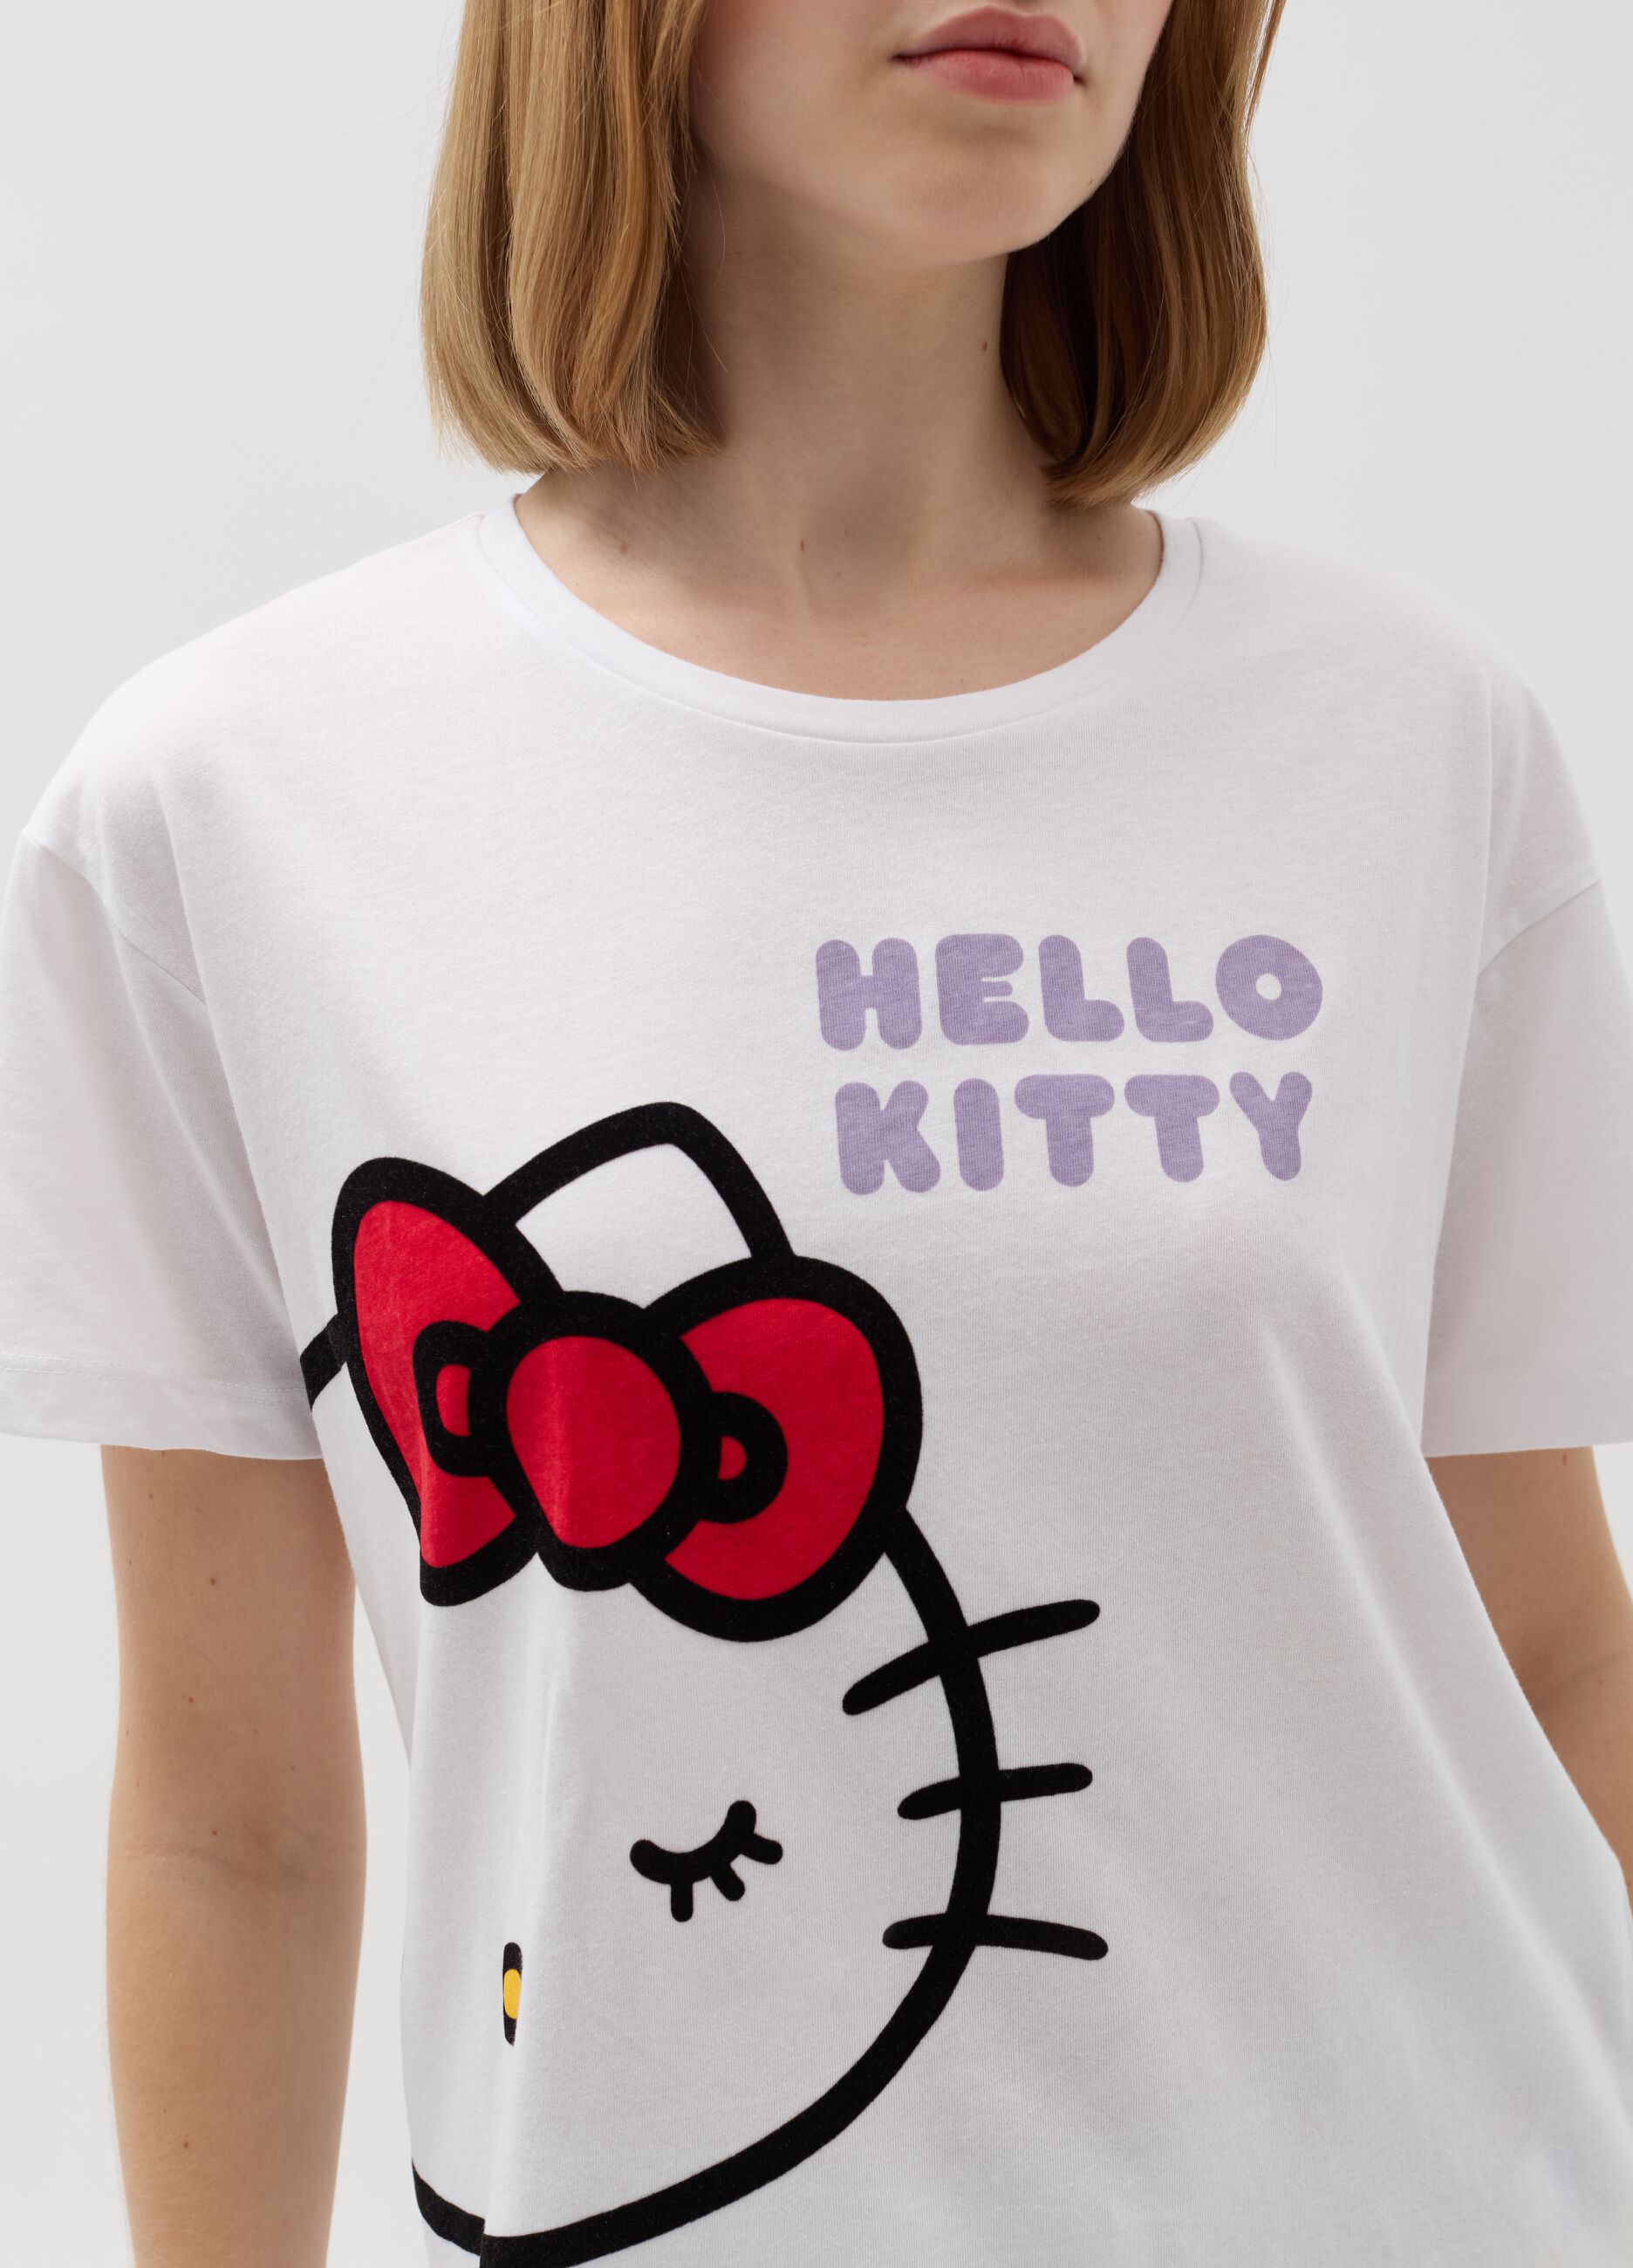 Pigiama in cotone con stampa Hello Kitty